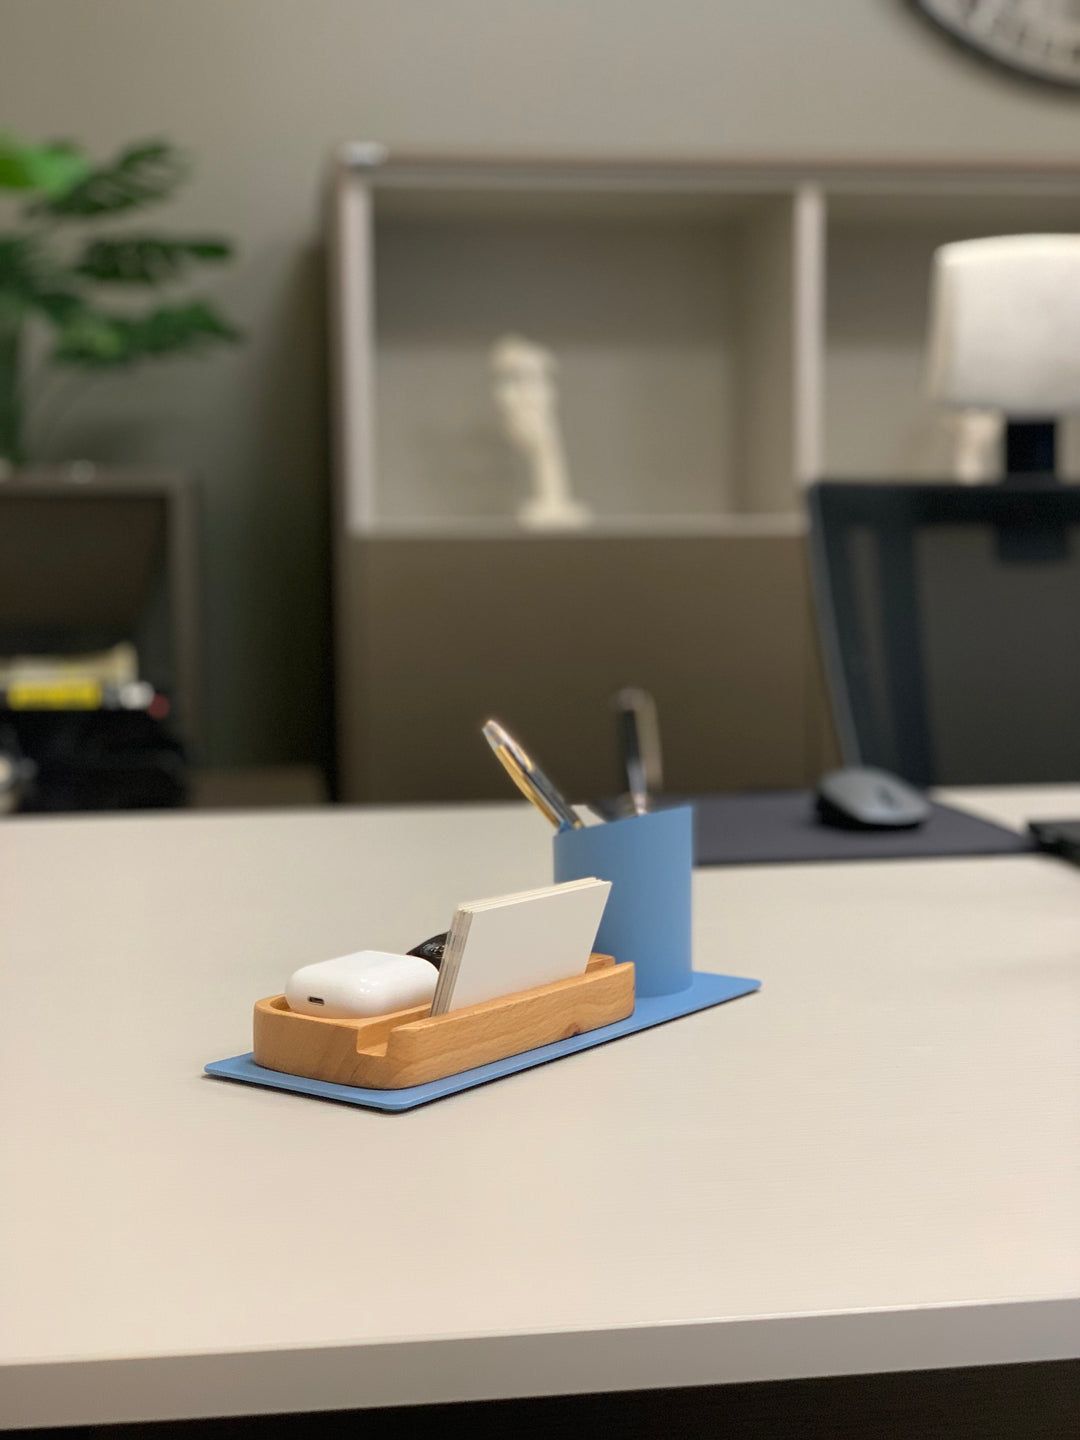 Desk Organizer Stifthalter, Telefonständer (10x10x25 cm, Blau)